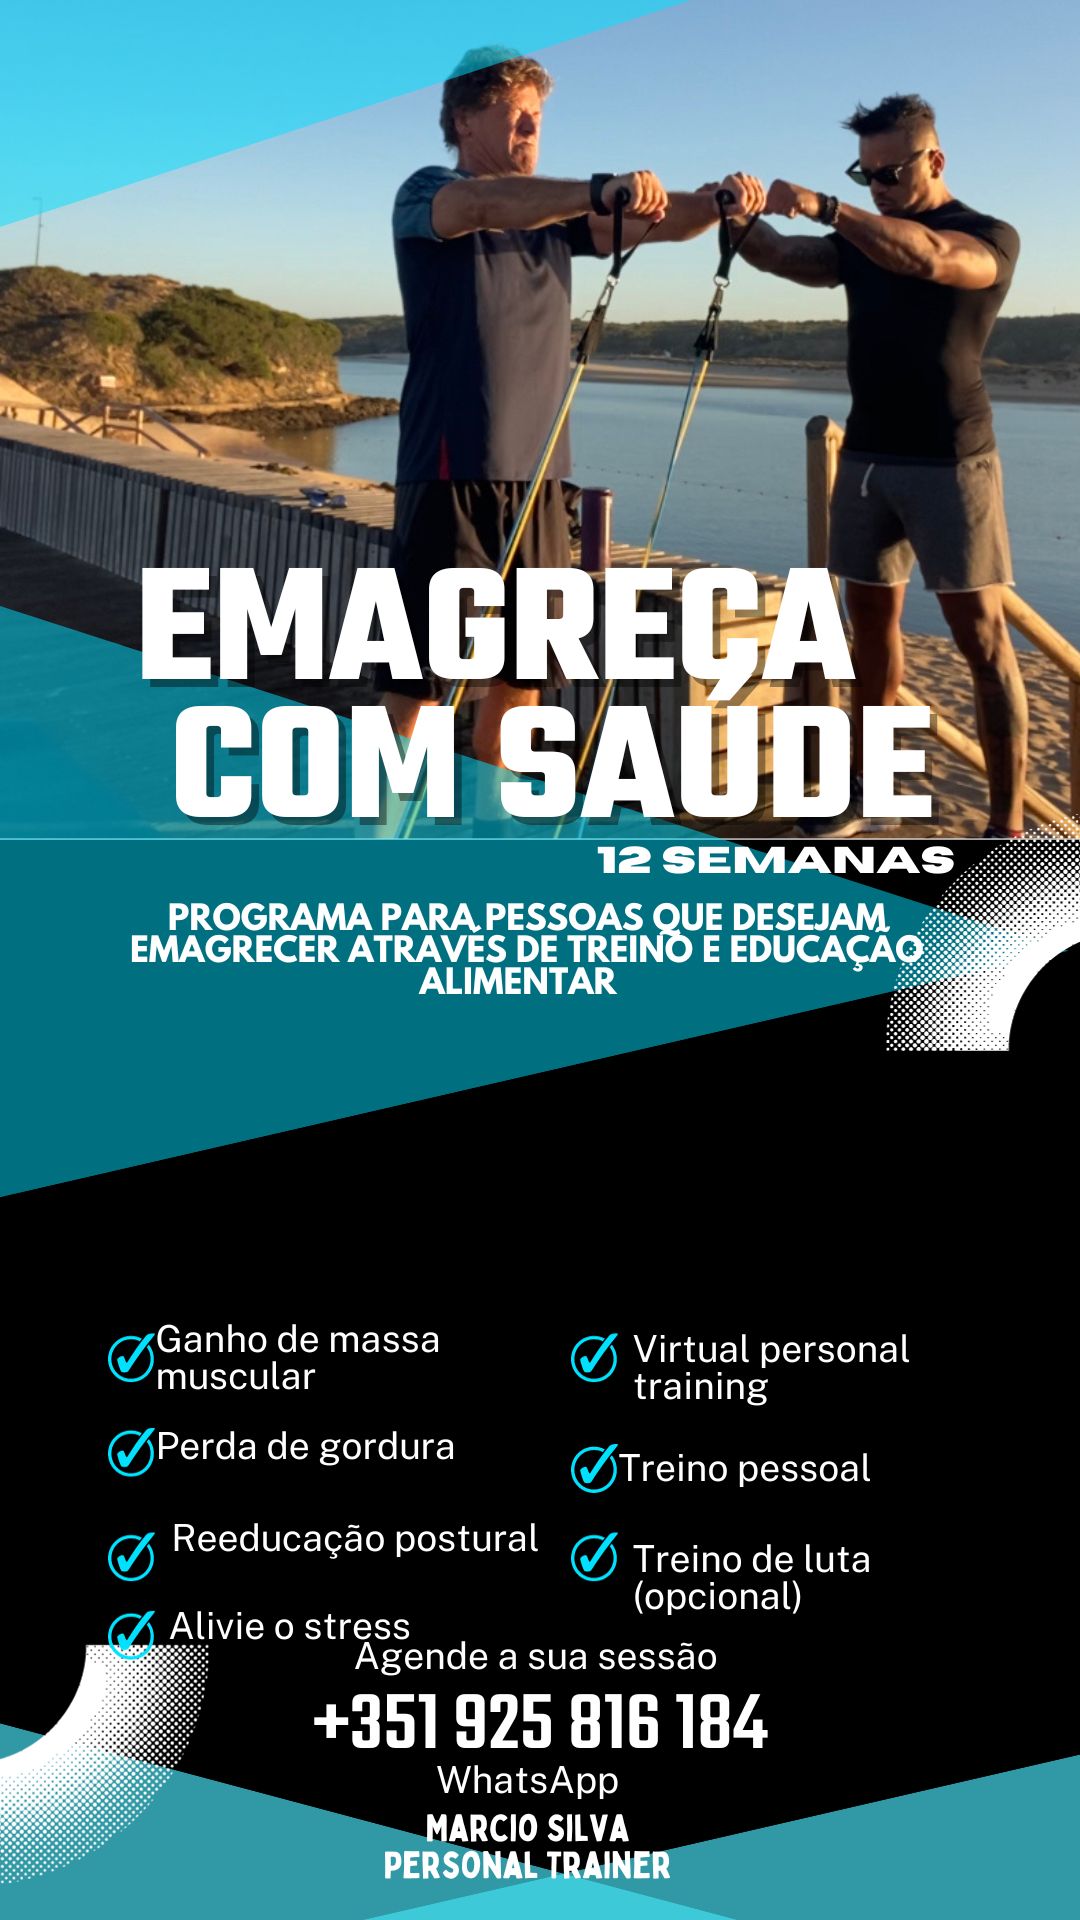 Marcio Silva Personal - Coimbra - Personal Training